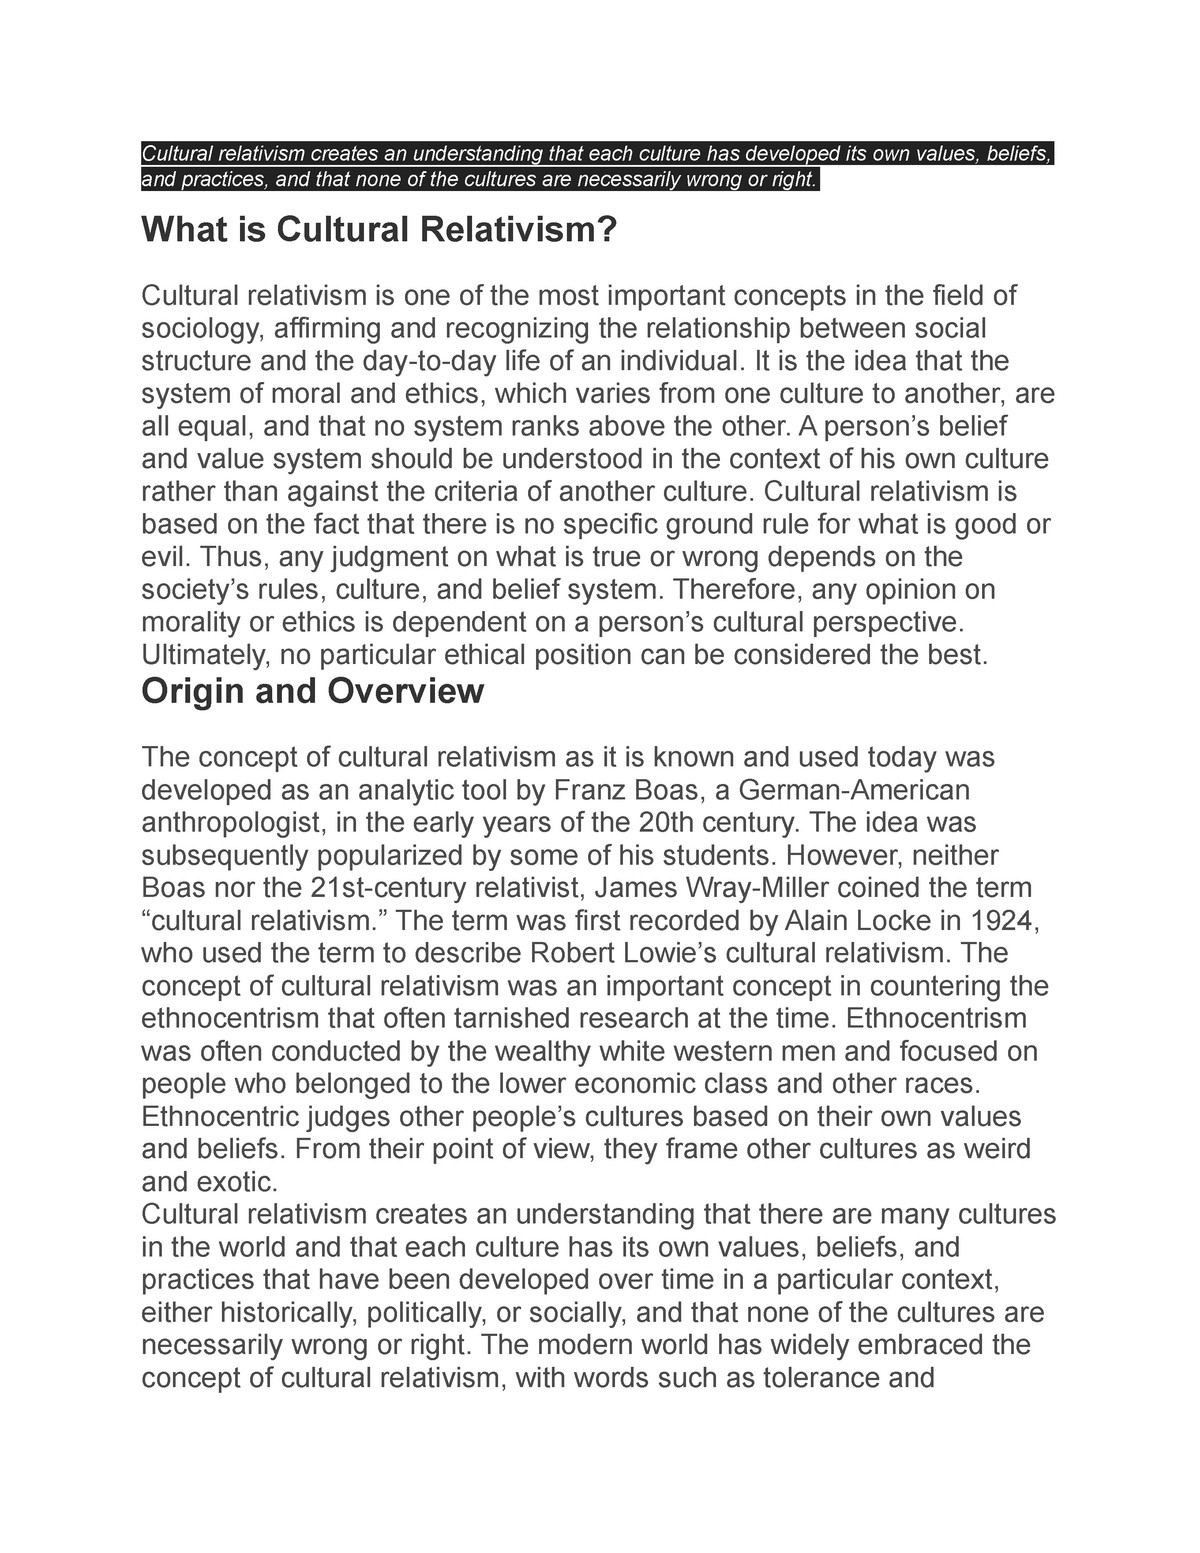 essay question on cultural relativism